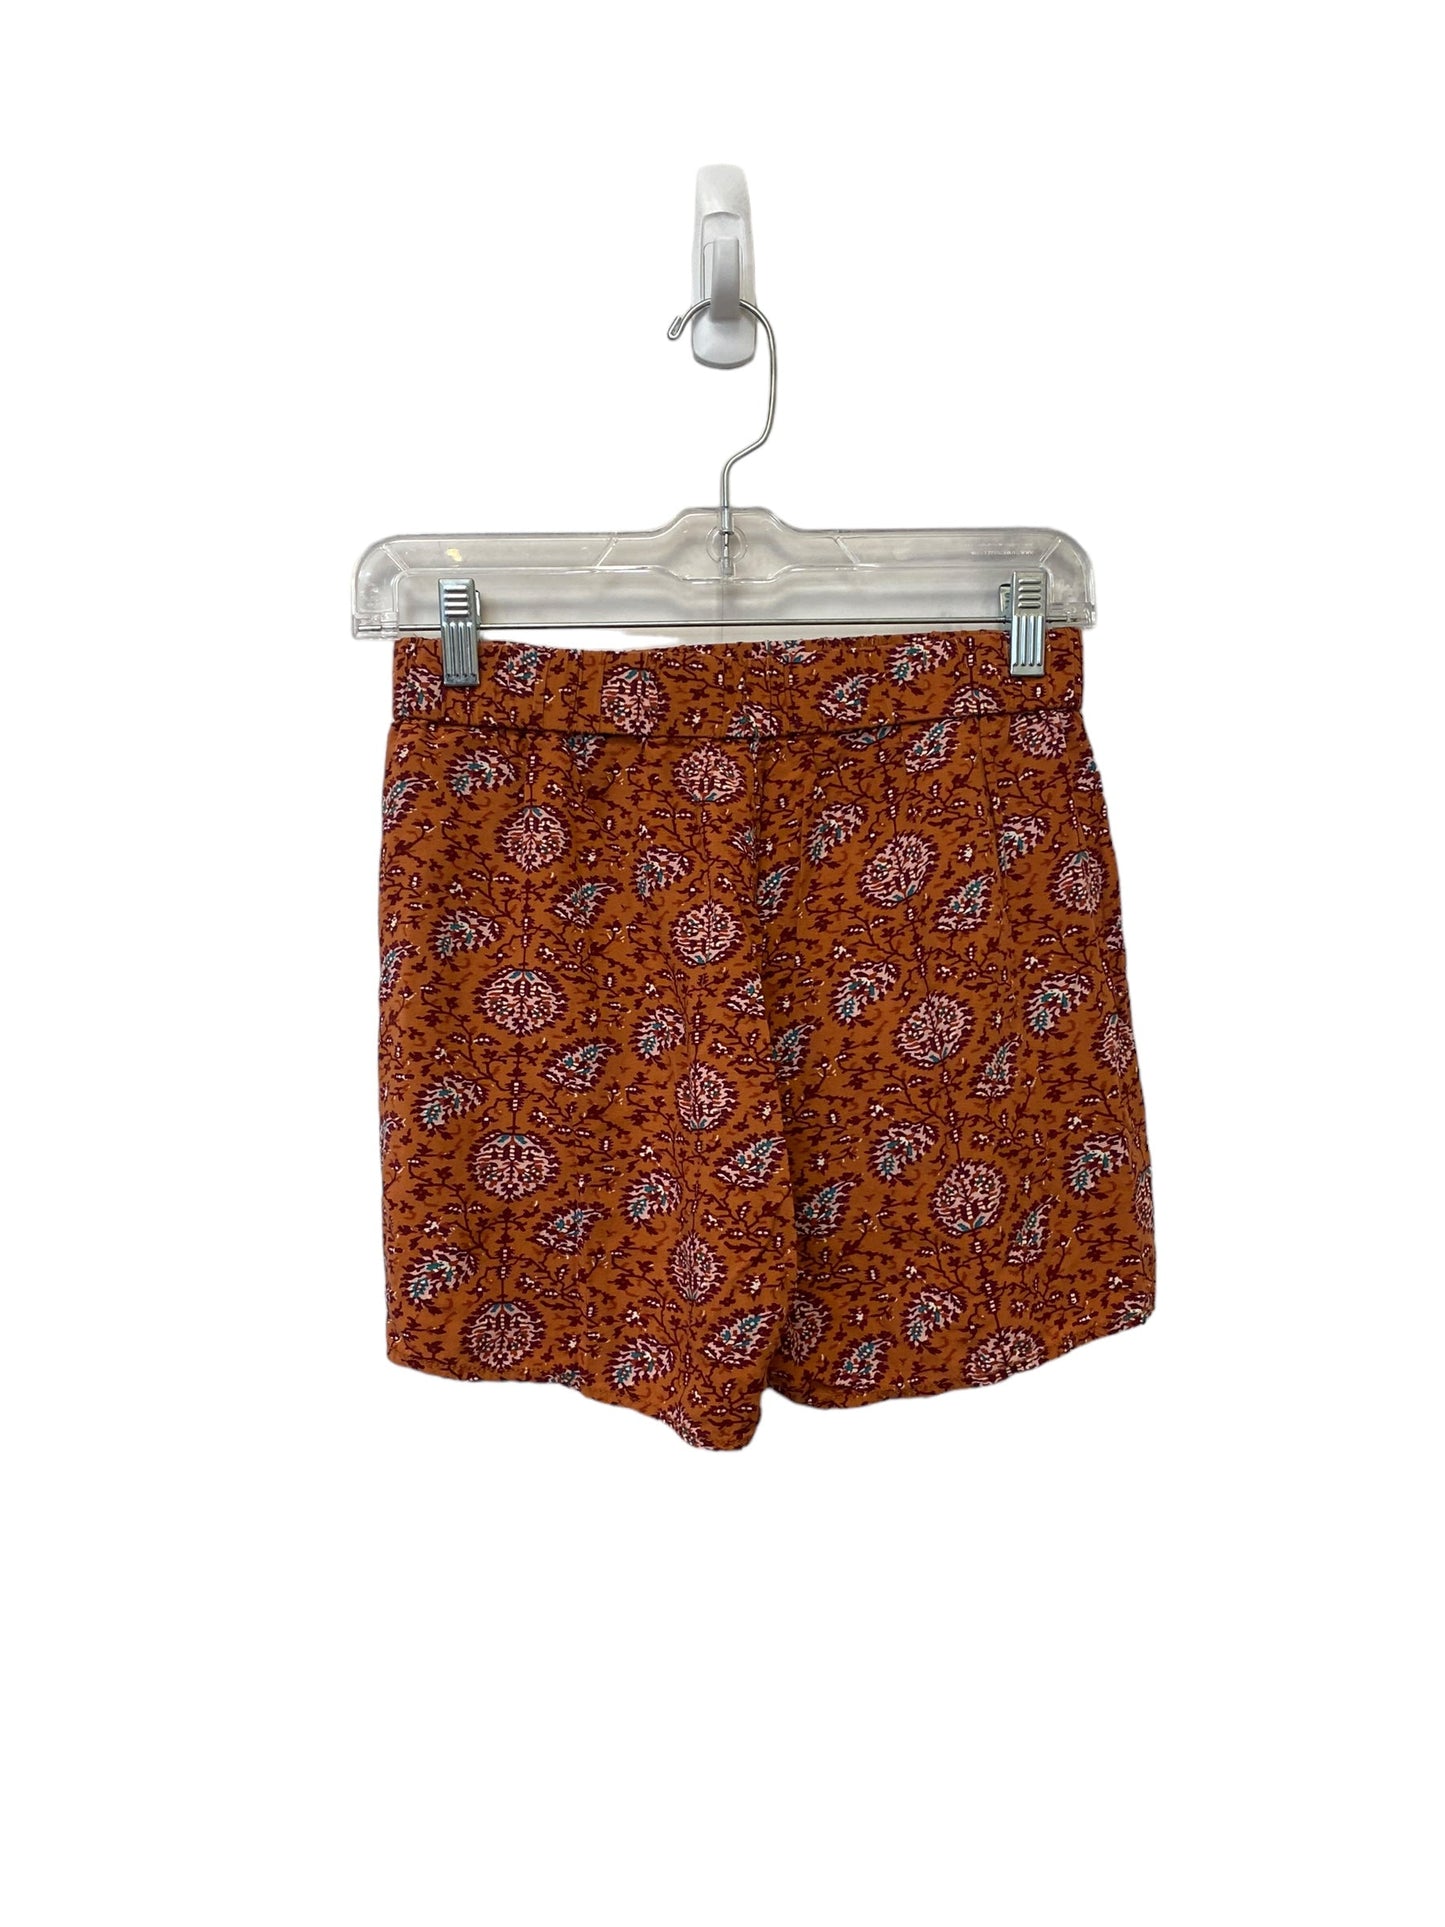 Orange Shorts Madewell, Size Xxs